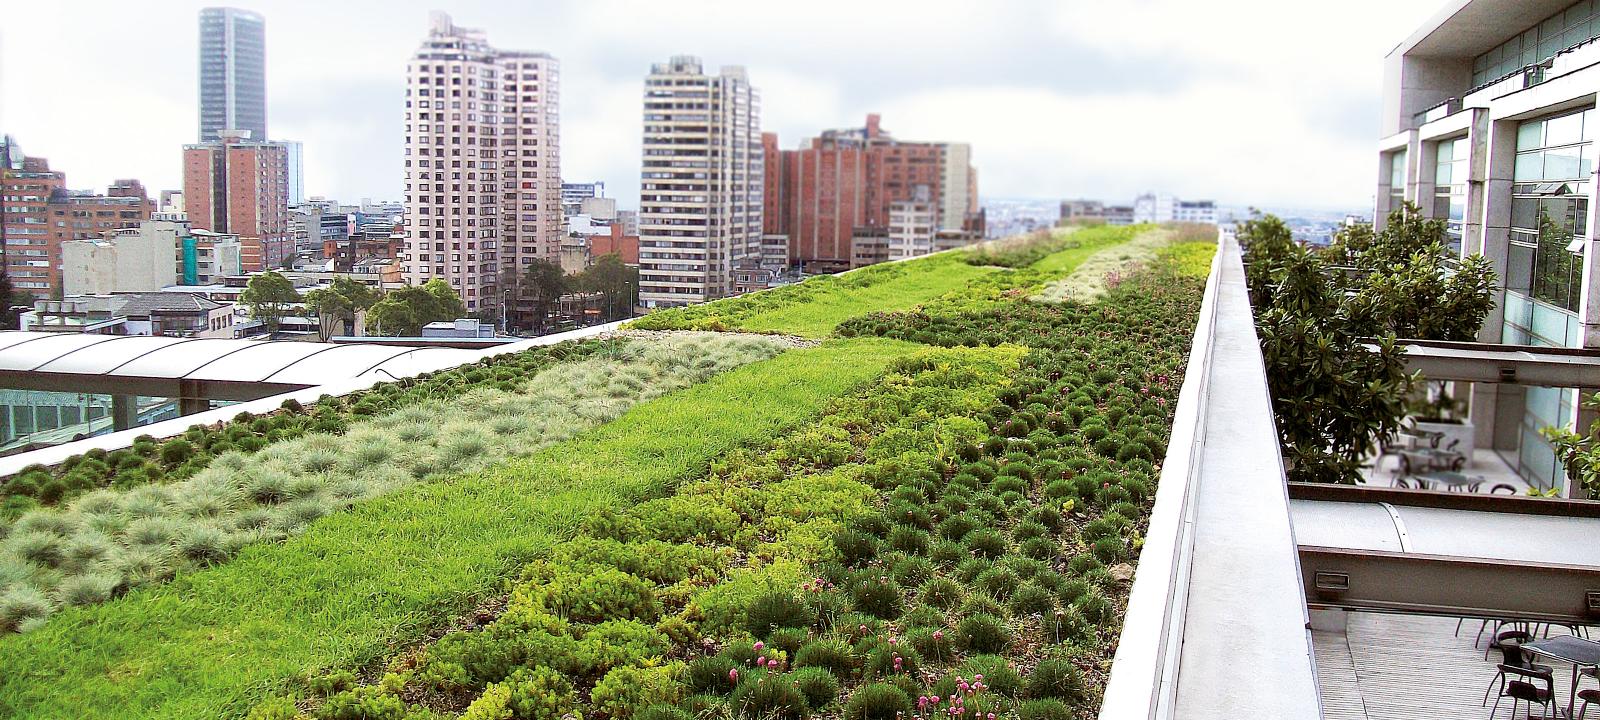 Végétalisation de toit extensiv dans la grande ville